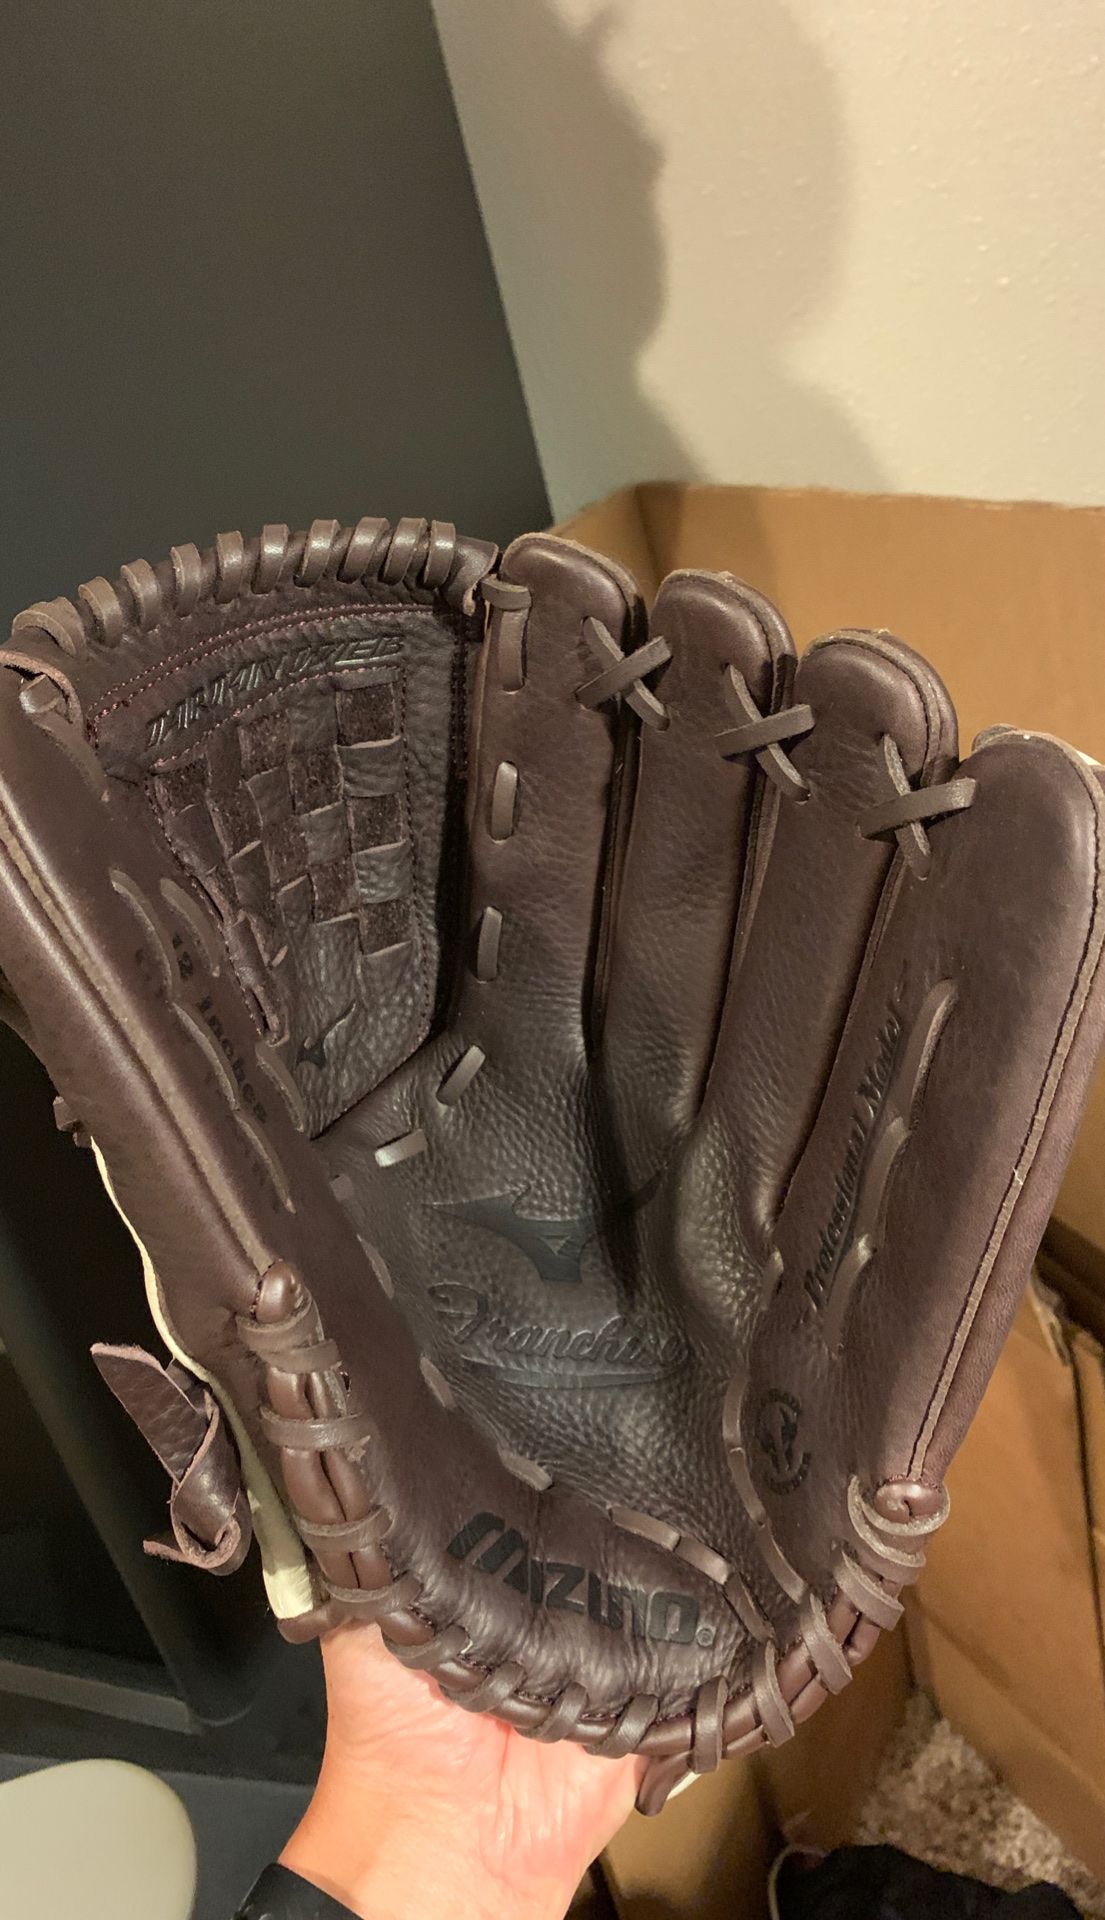 NEVER USED Franchise Baseball Glove 12”